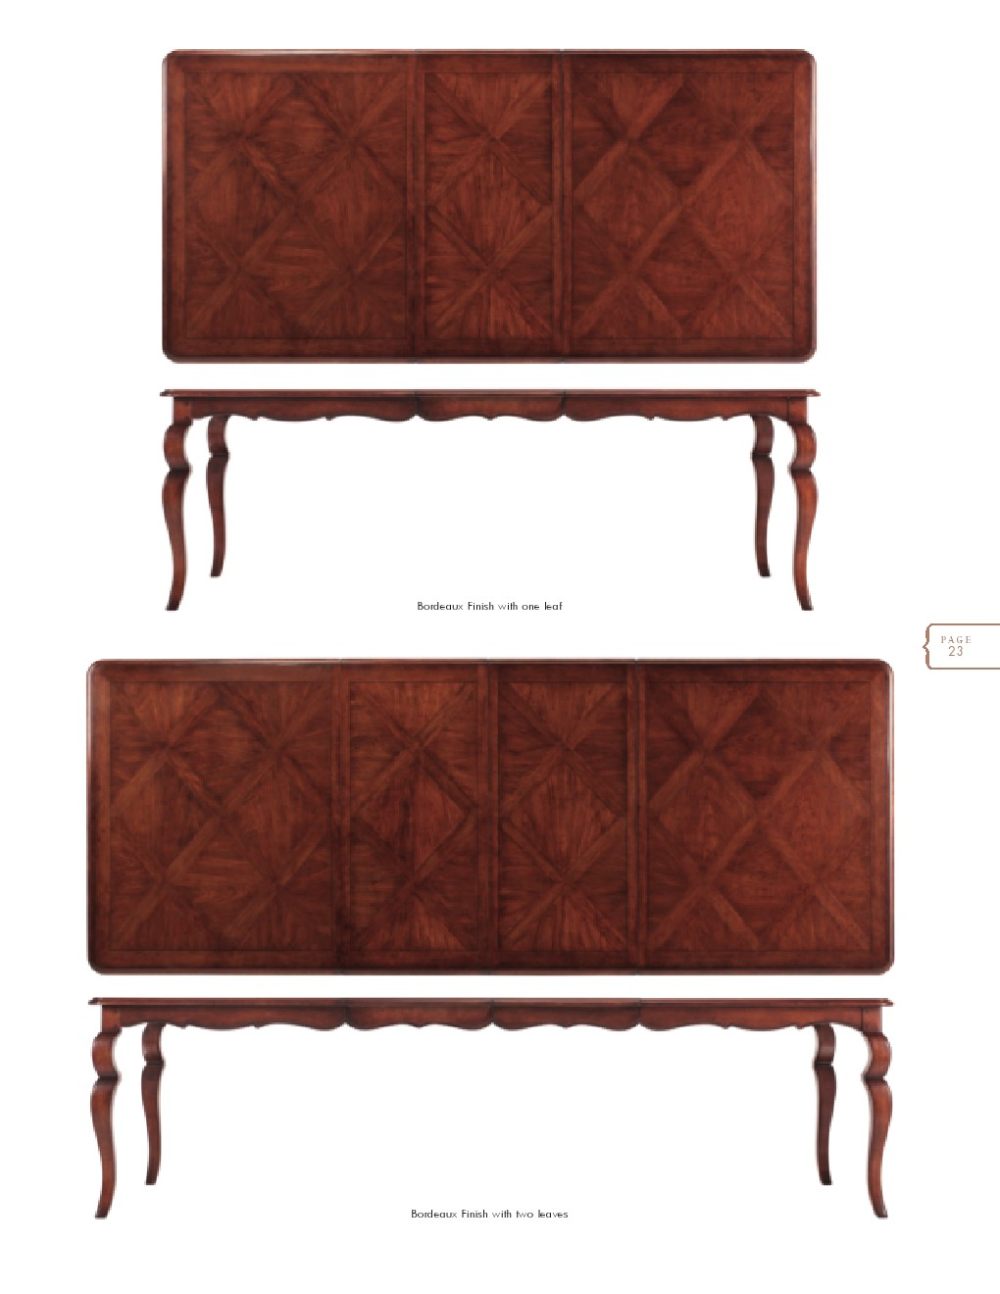 美国家具 Drexel Heritage Furniture (非常有历史的家具品牌)_0023.jpg